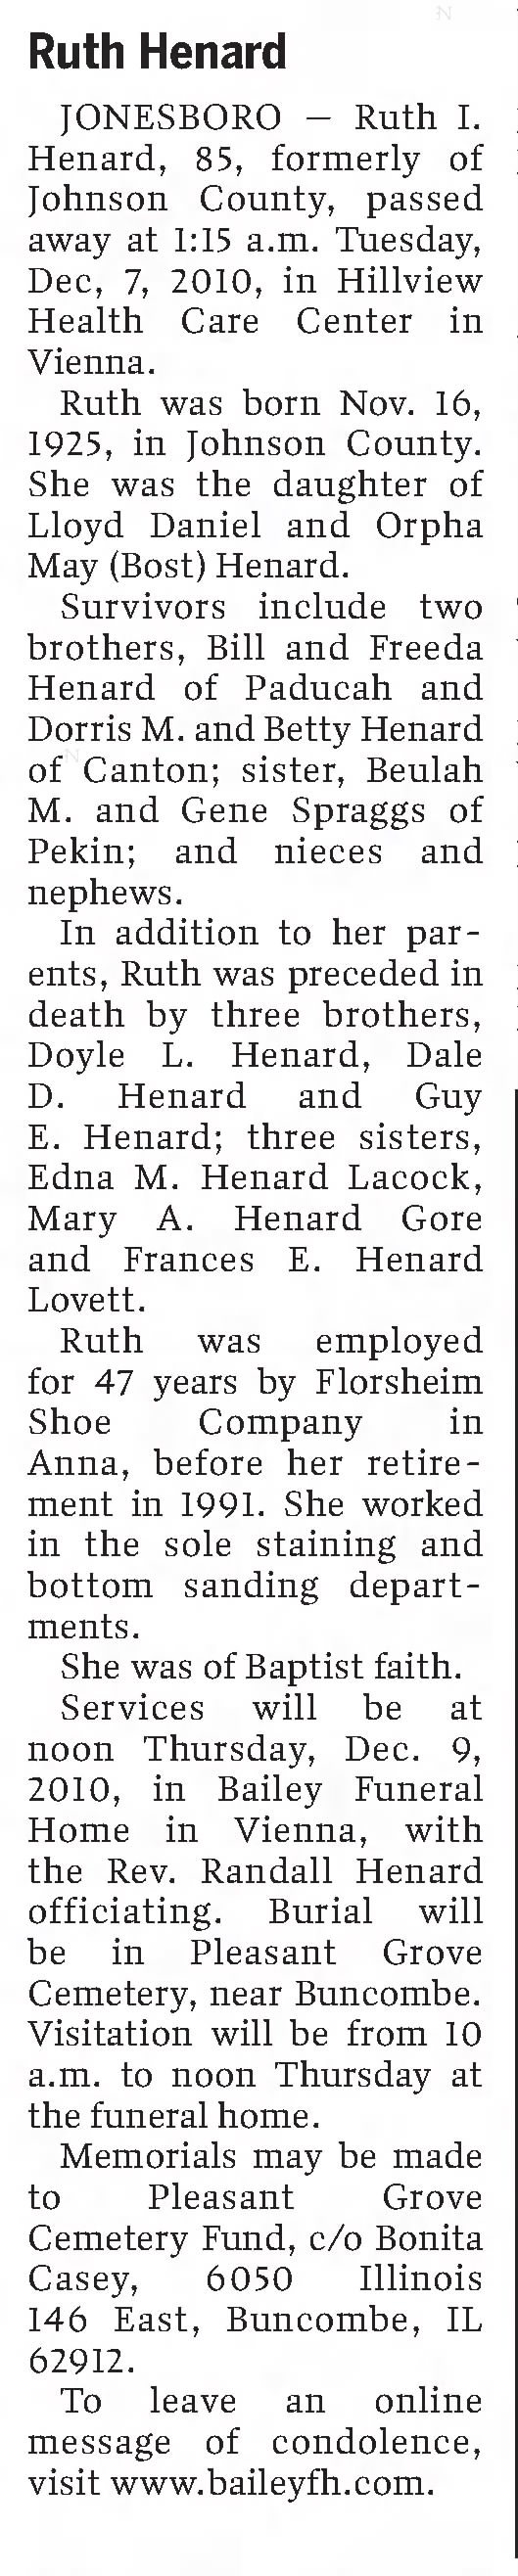 Ruth Henard Obituary